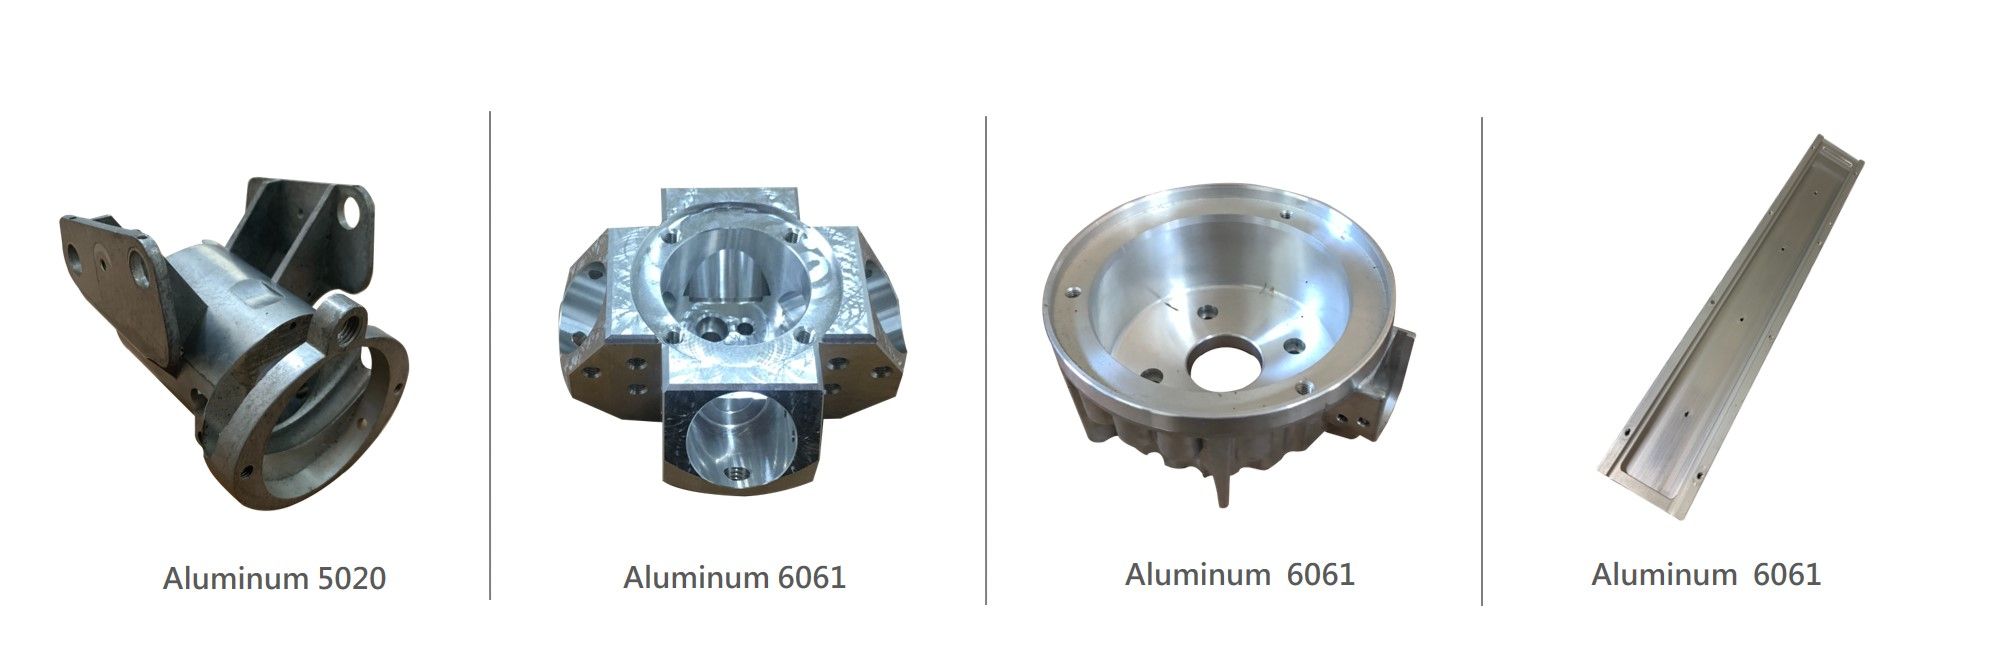 Aluminum Series